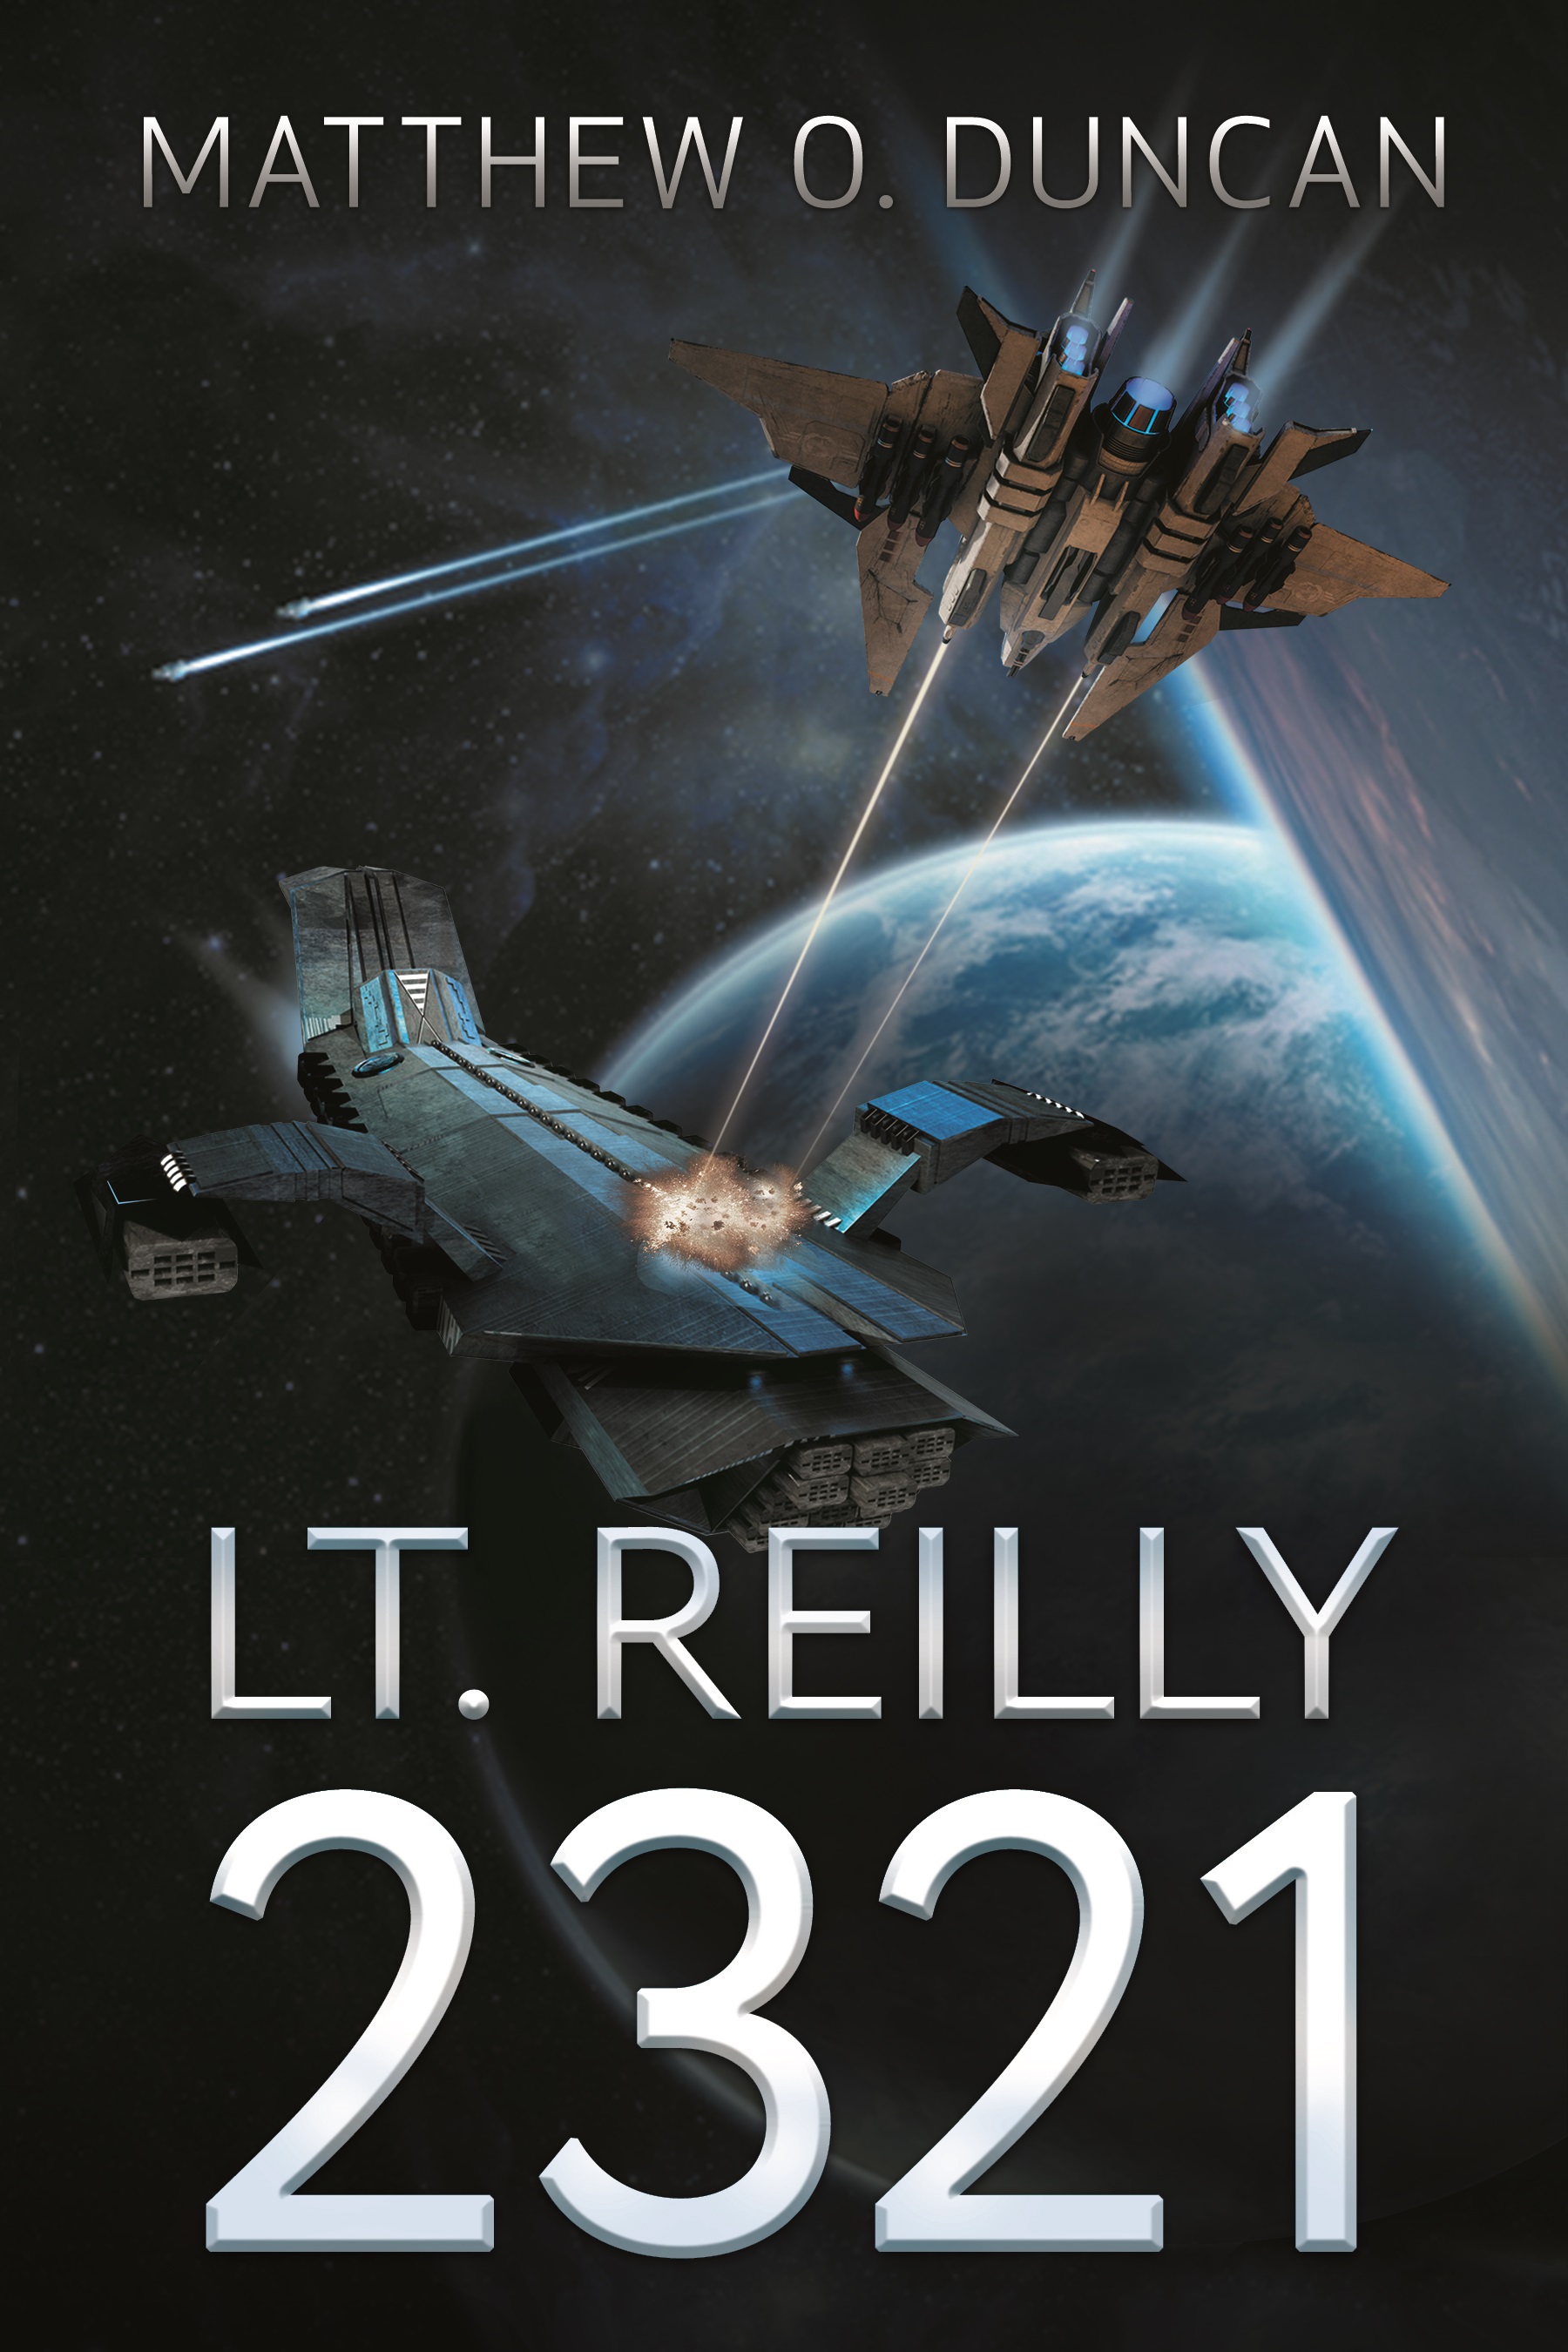 Lt. Reilly 2321